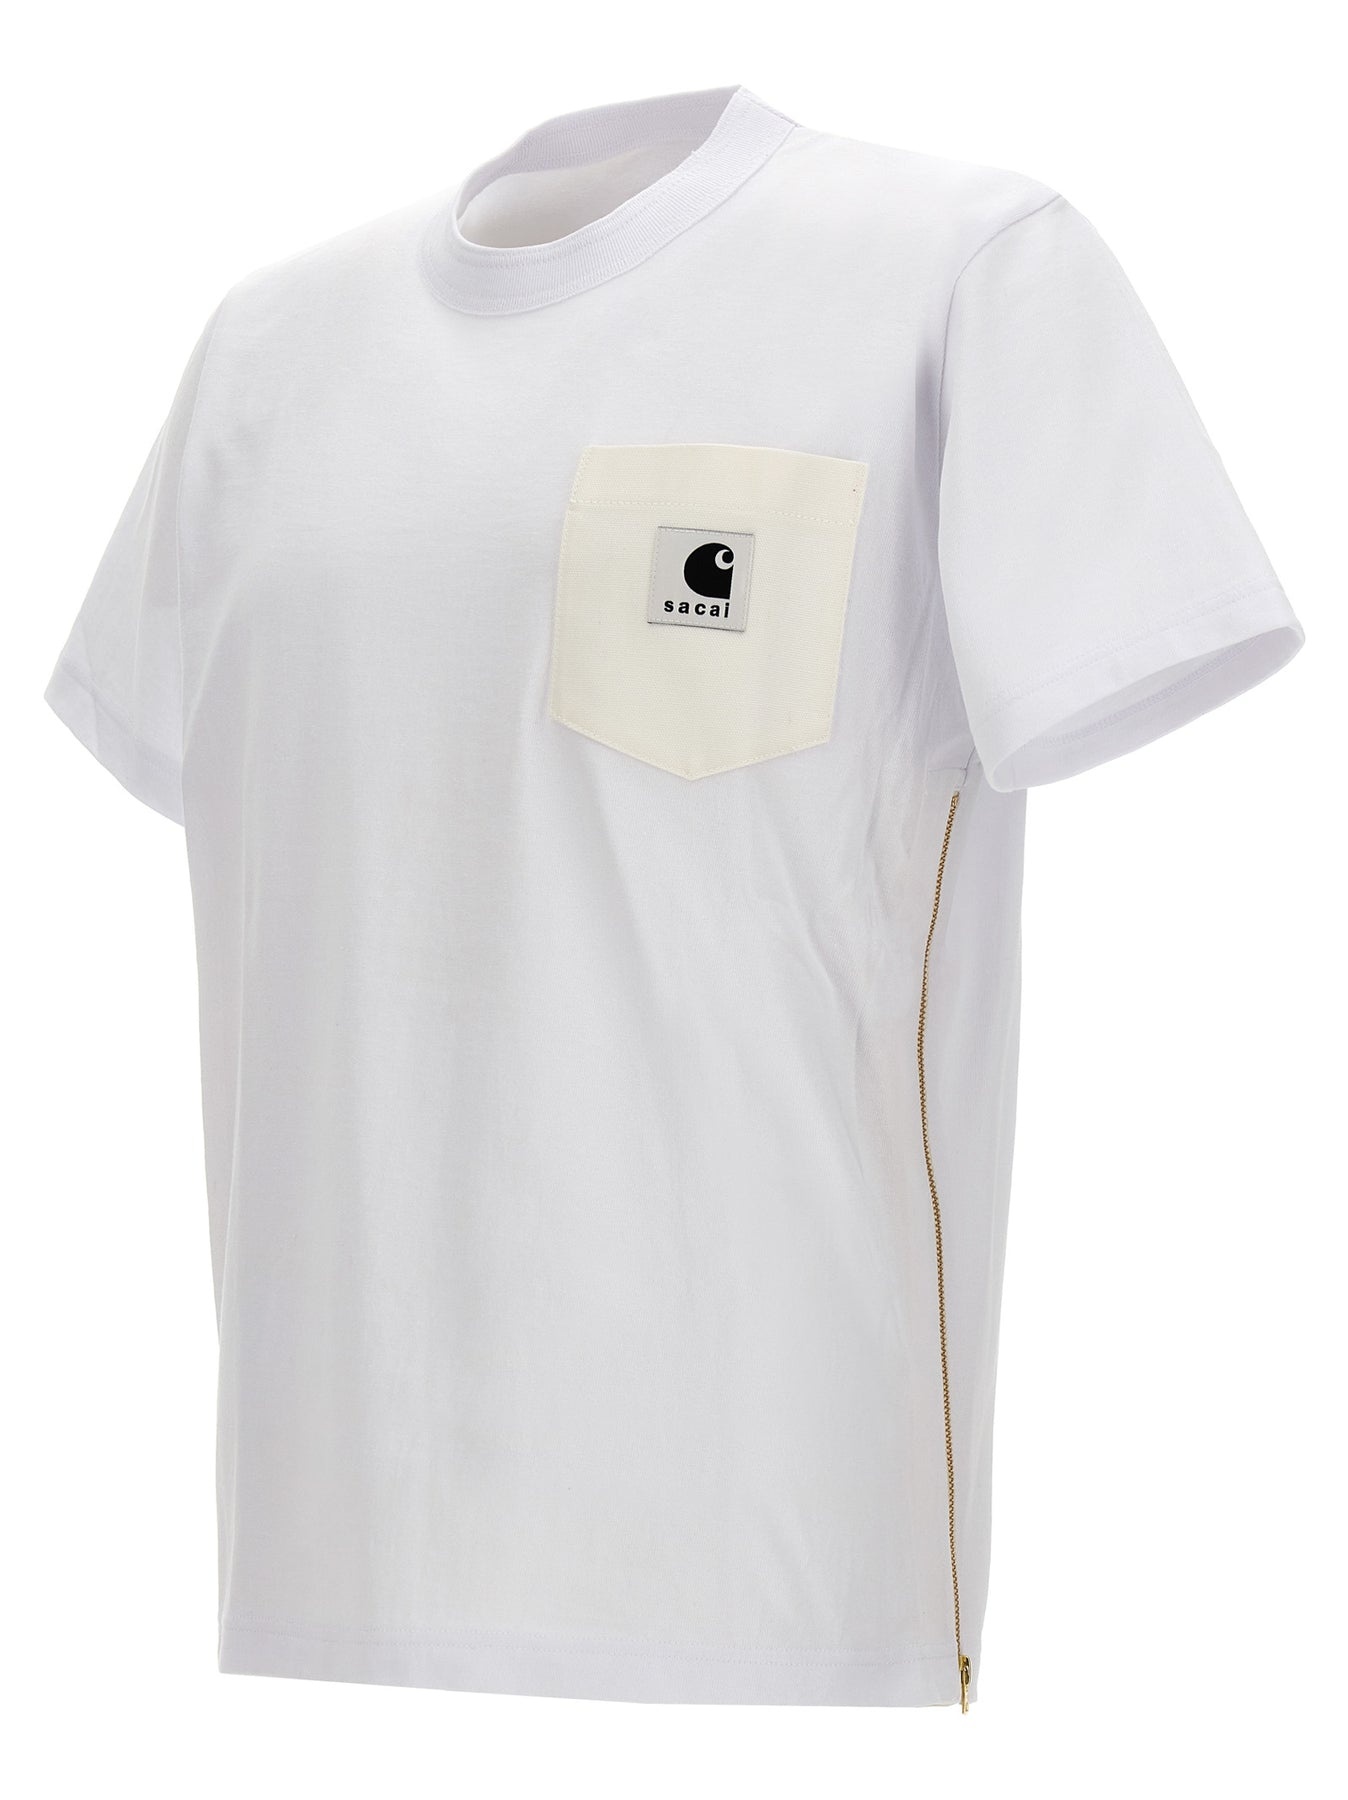 Sacai X Carhartt Wip T-Shirt White - 3